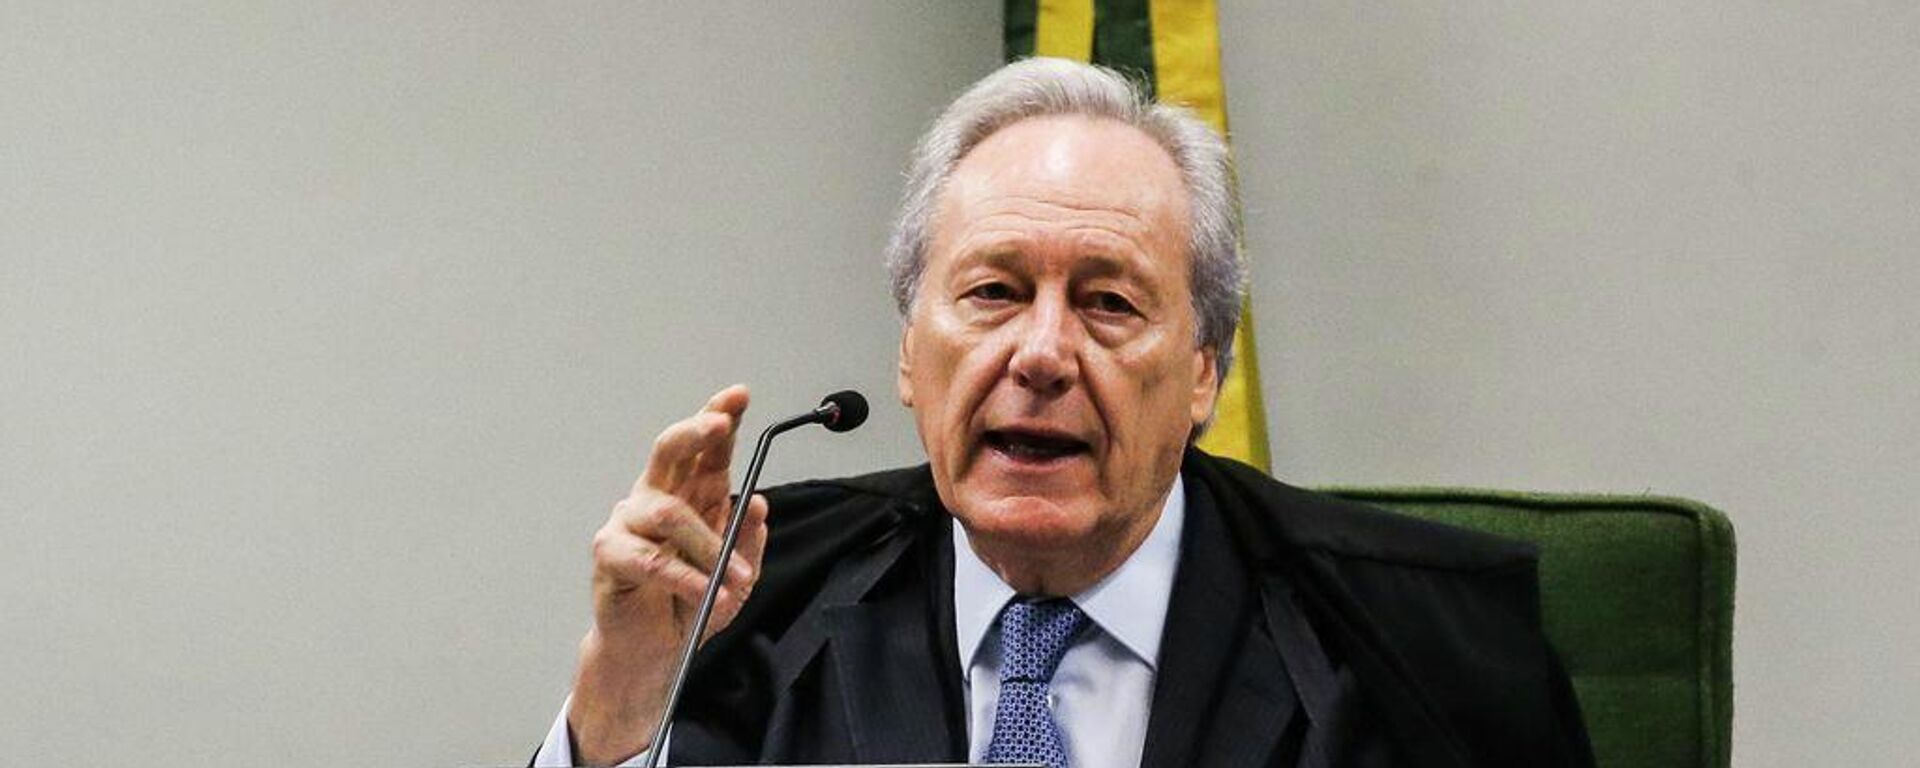 O ministro Ricardo Lewandowski, do Supremo Tribunal Federal (STF), durante sessão na Segunda Turma, em 4 de dezembro de 2018 - Sputnik Brasil, 1920, 31.12.2021